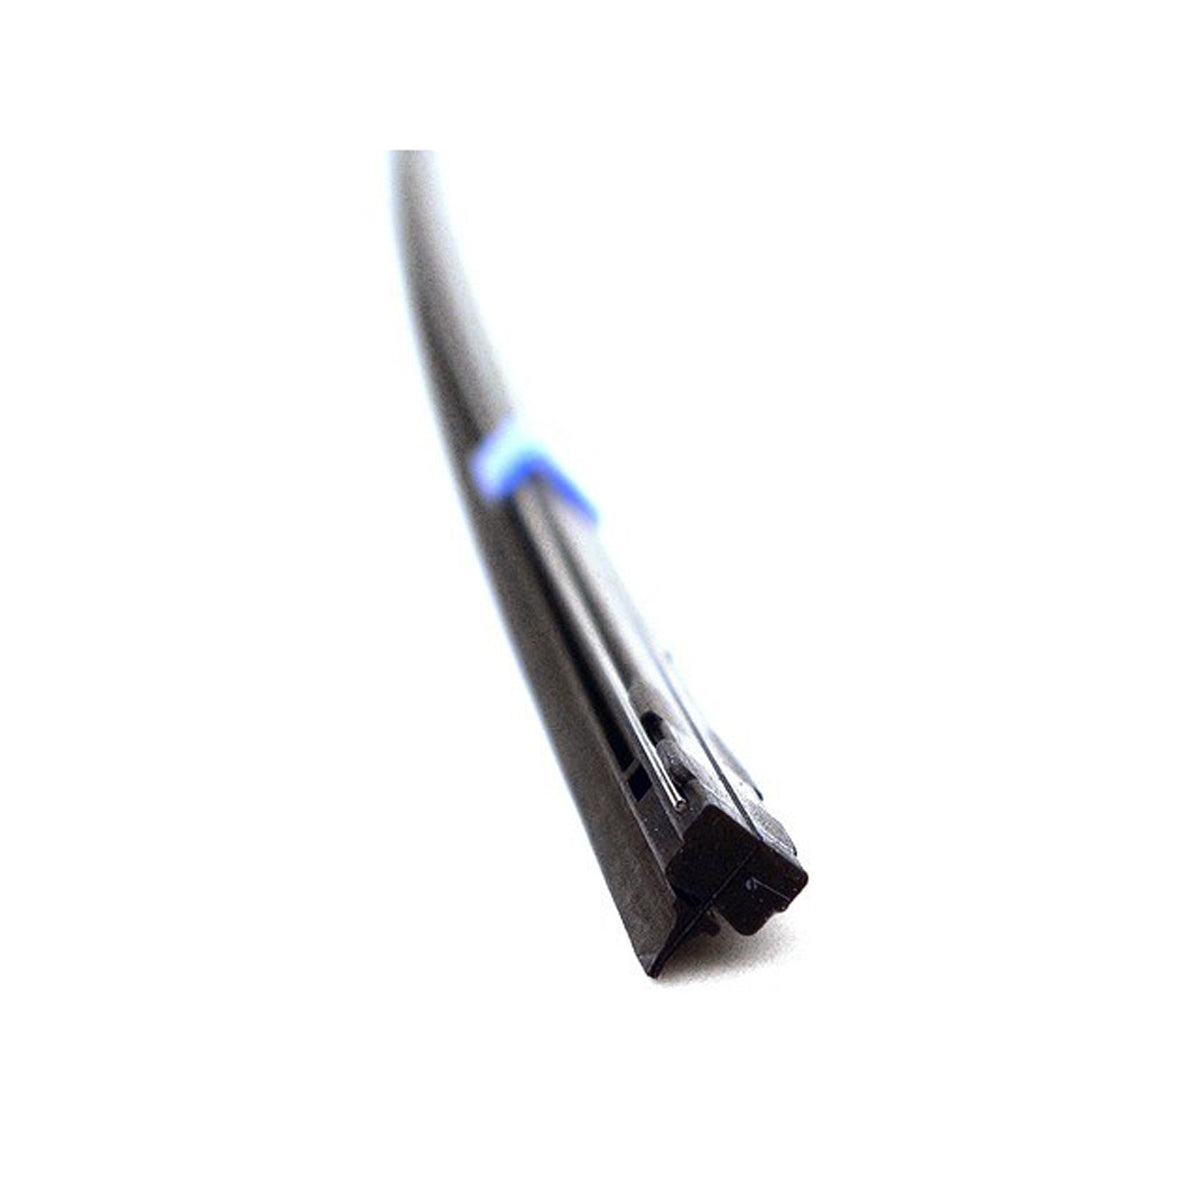 PIAA SILICONE WIPER REFILL for Radix & Aero Vogue Blade ( 24" ) ( 8mm ) (Barcode: 722935940601 )